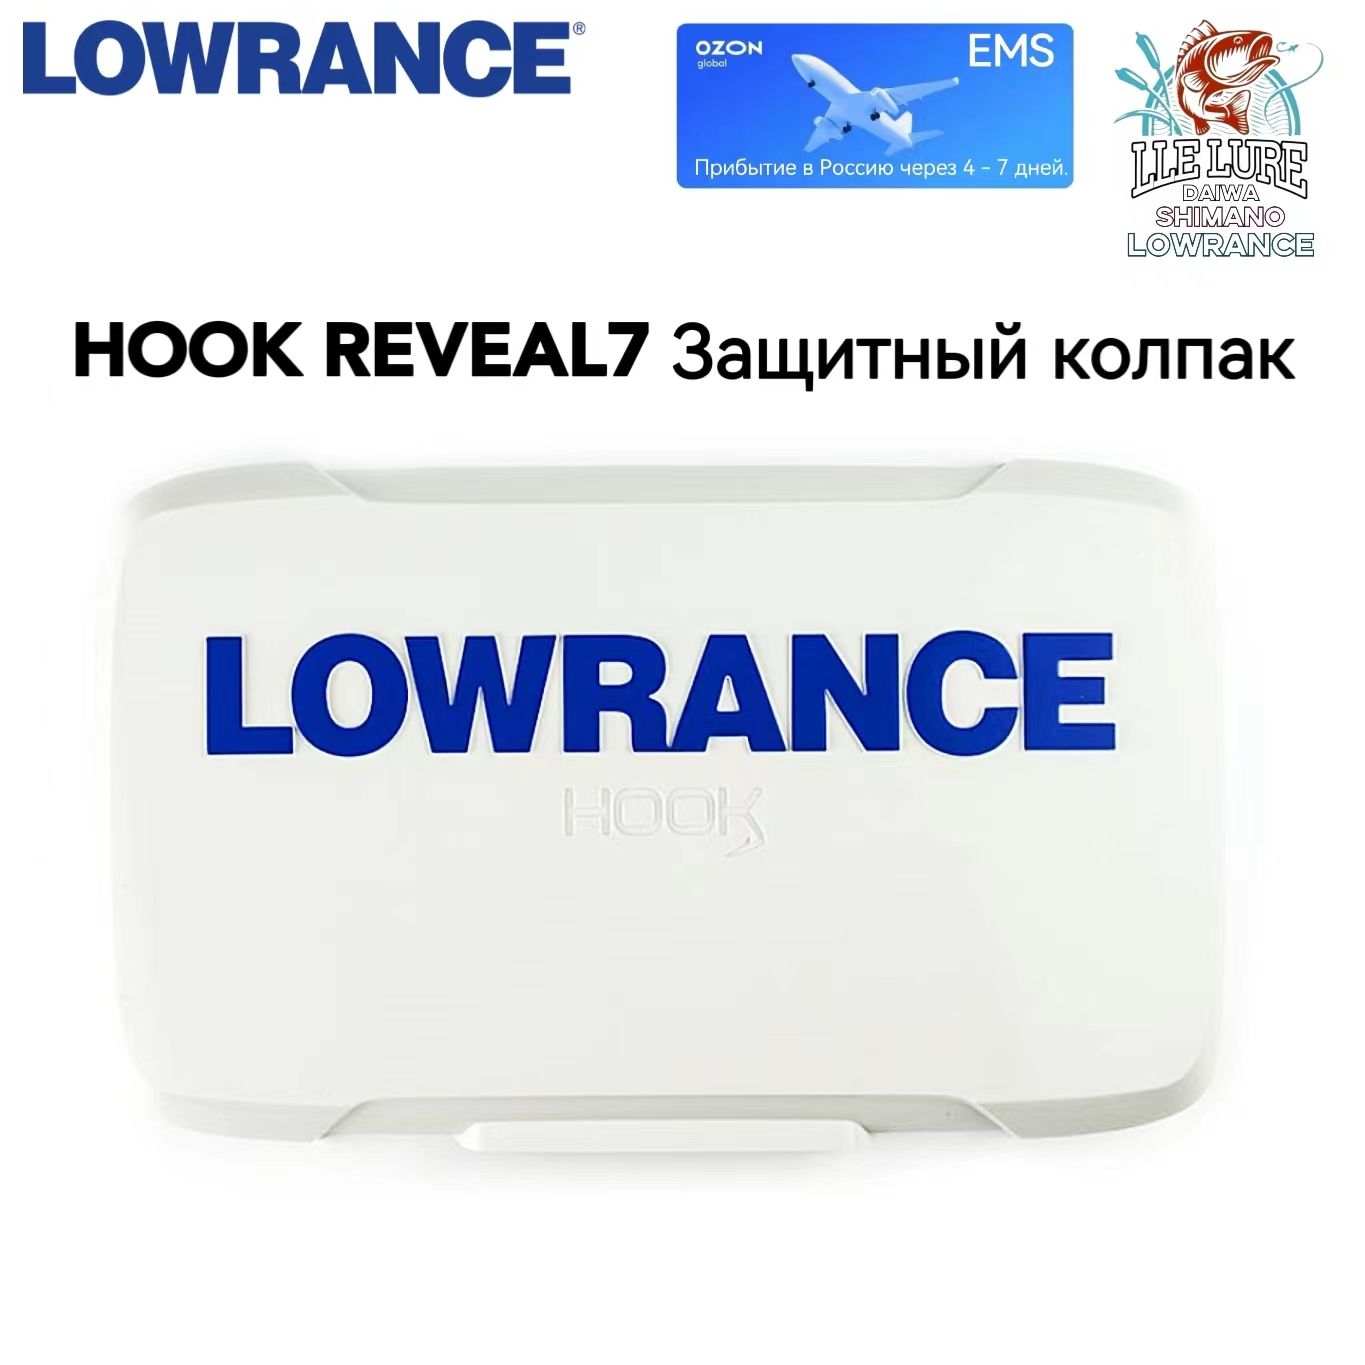 LOWRANCE HOOK REVEAL 7 Защитный колпак - купить с доставкой по